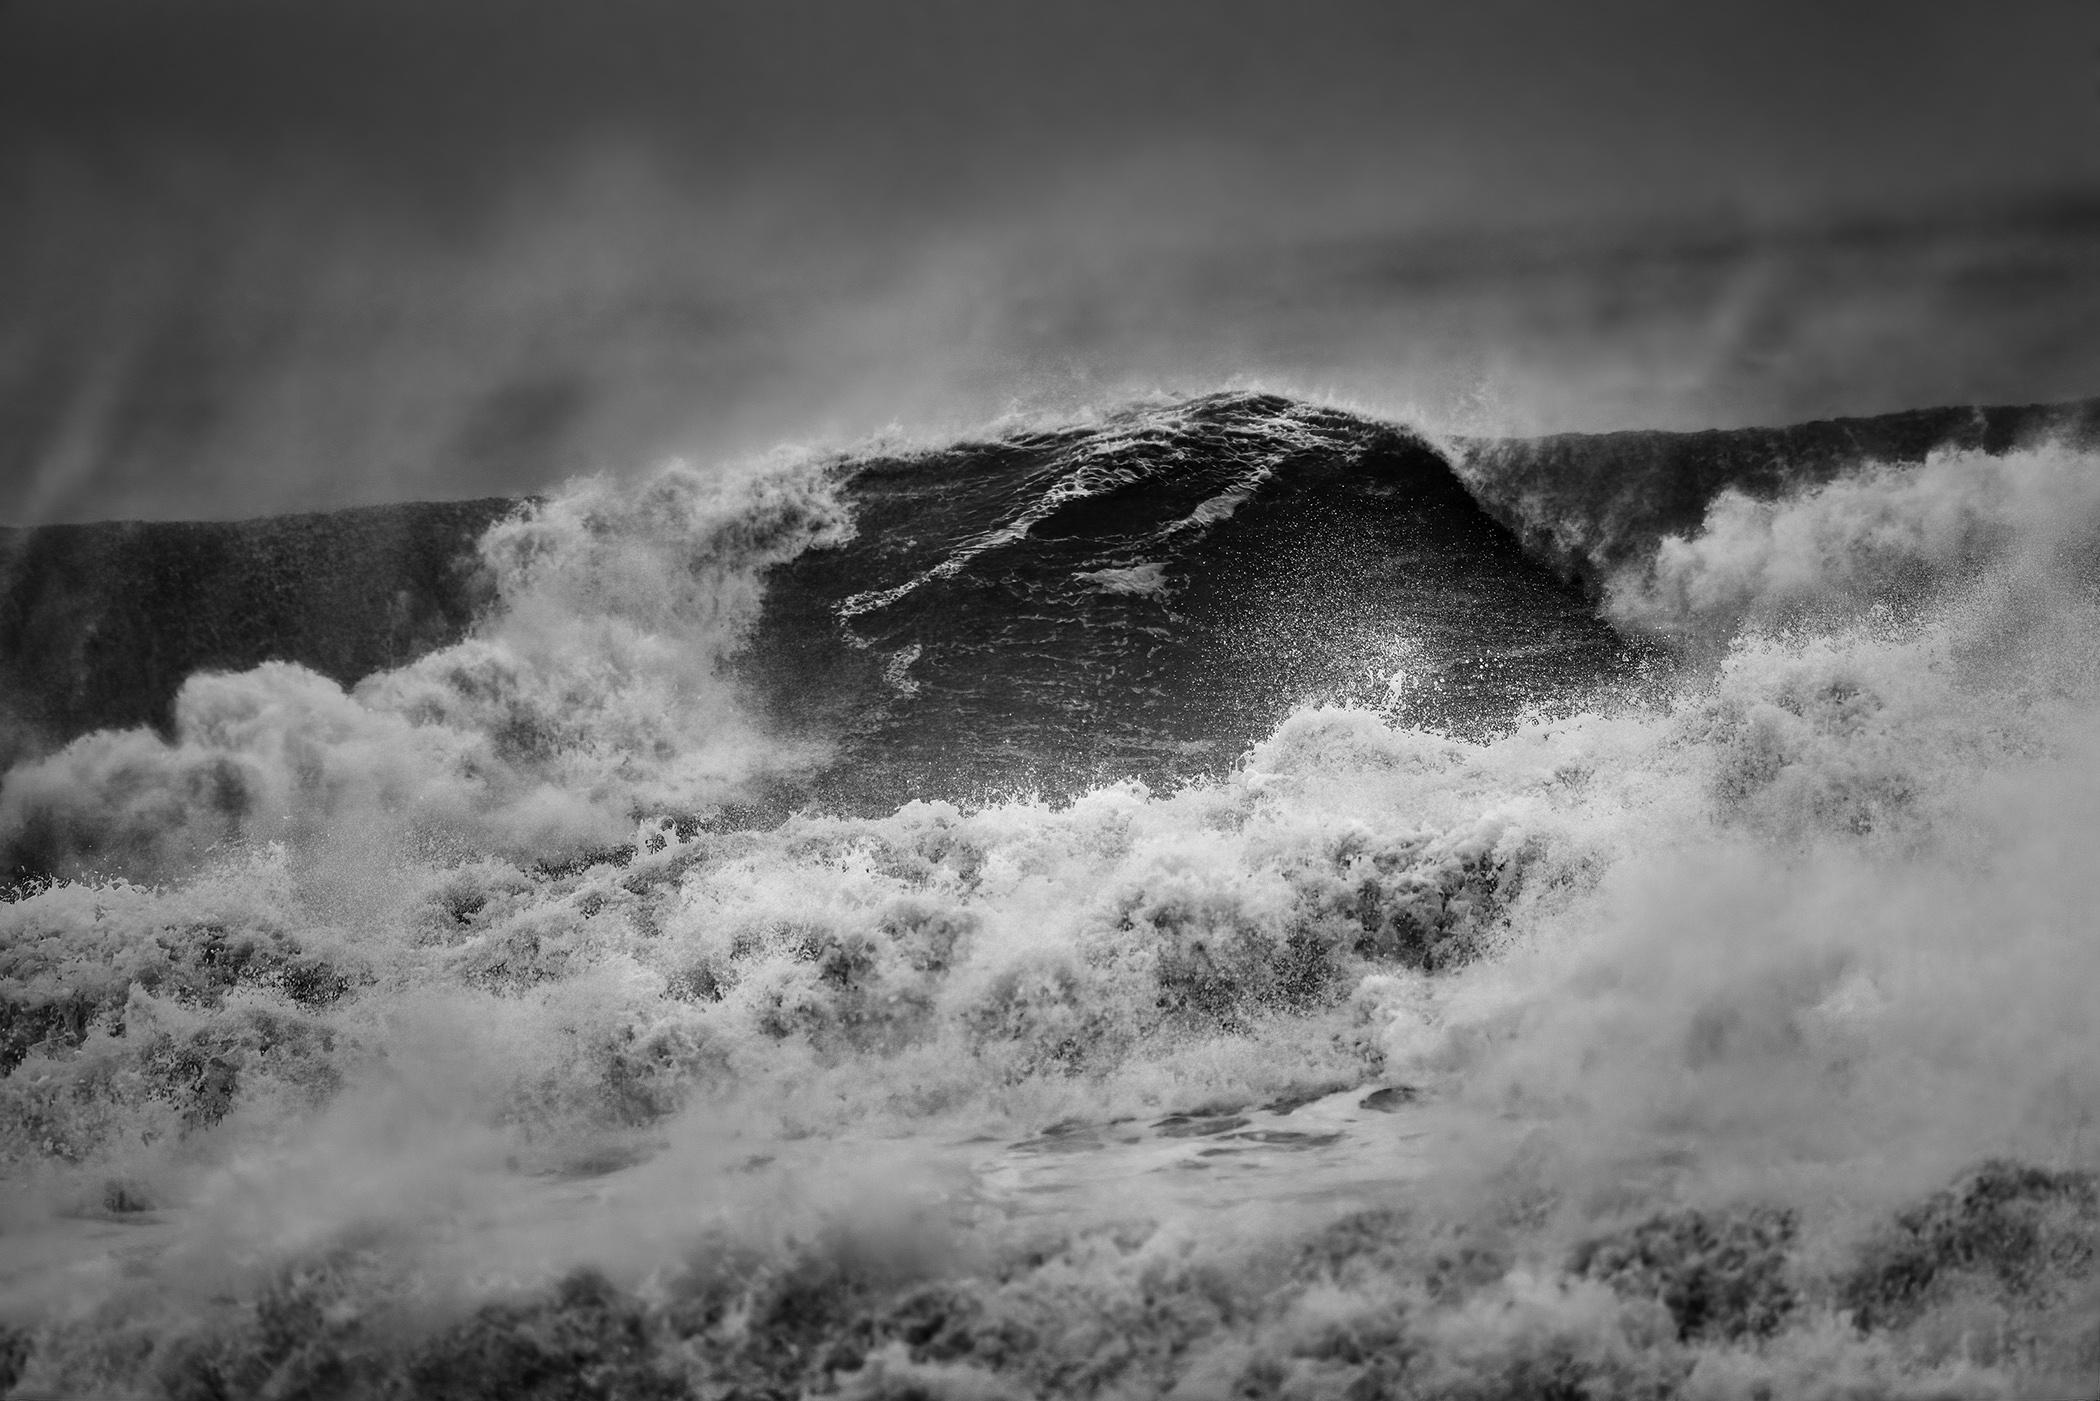 Reslient-ocean-waves-storm-SandyHook-GatewayNationalRecreationArea-NewJersey